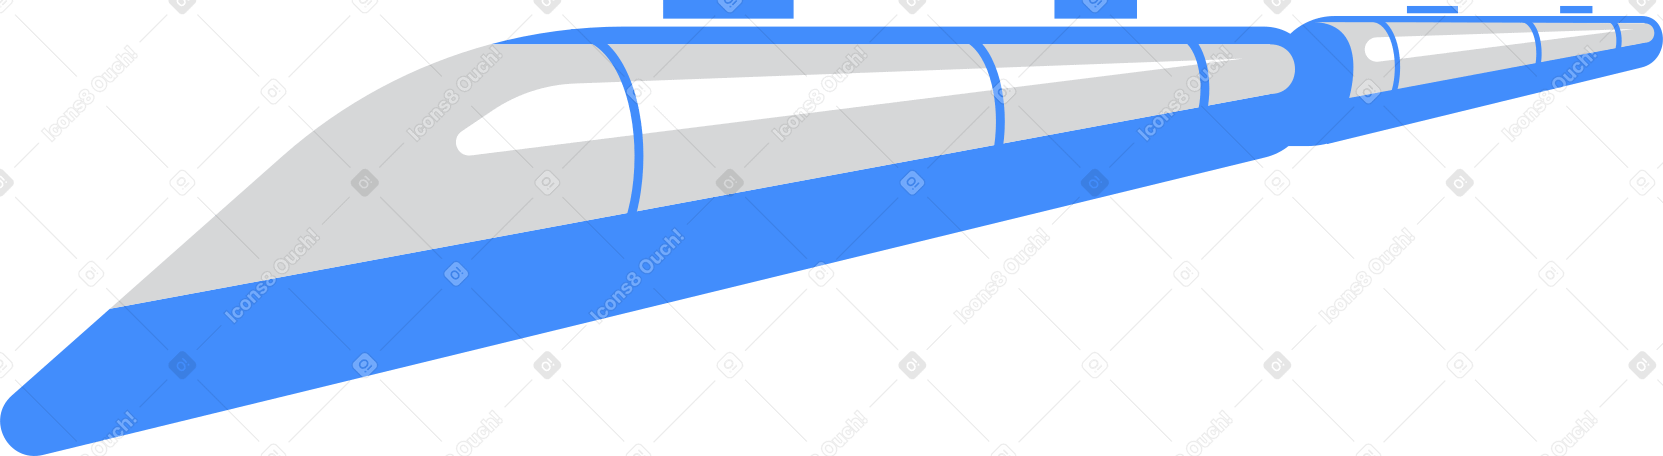 train Illustration in PNG, SVG